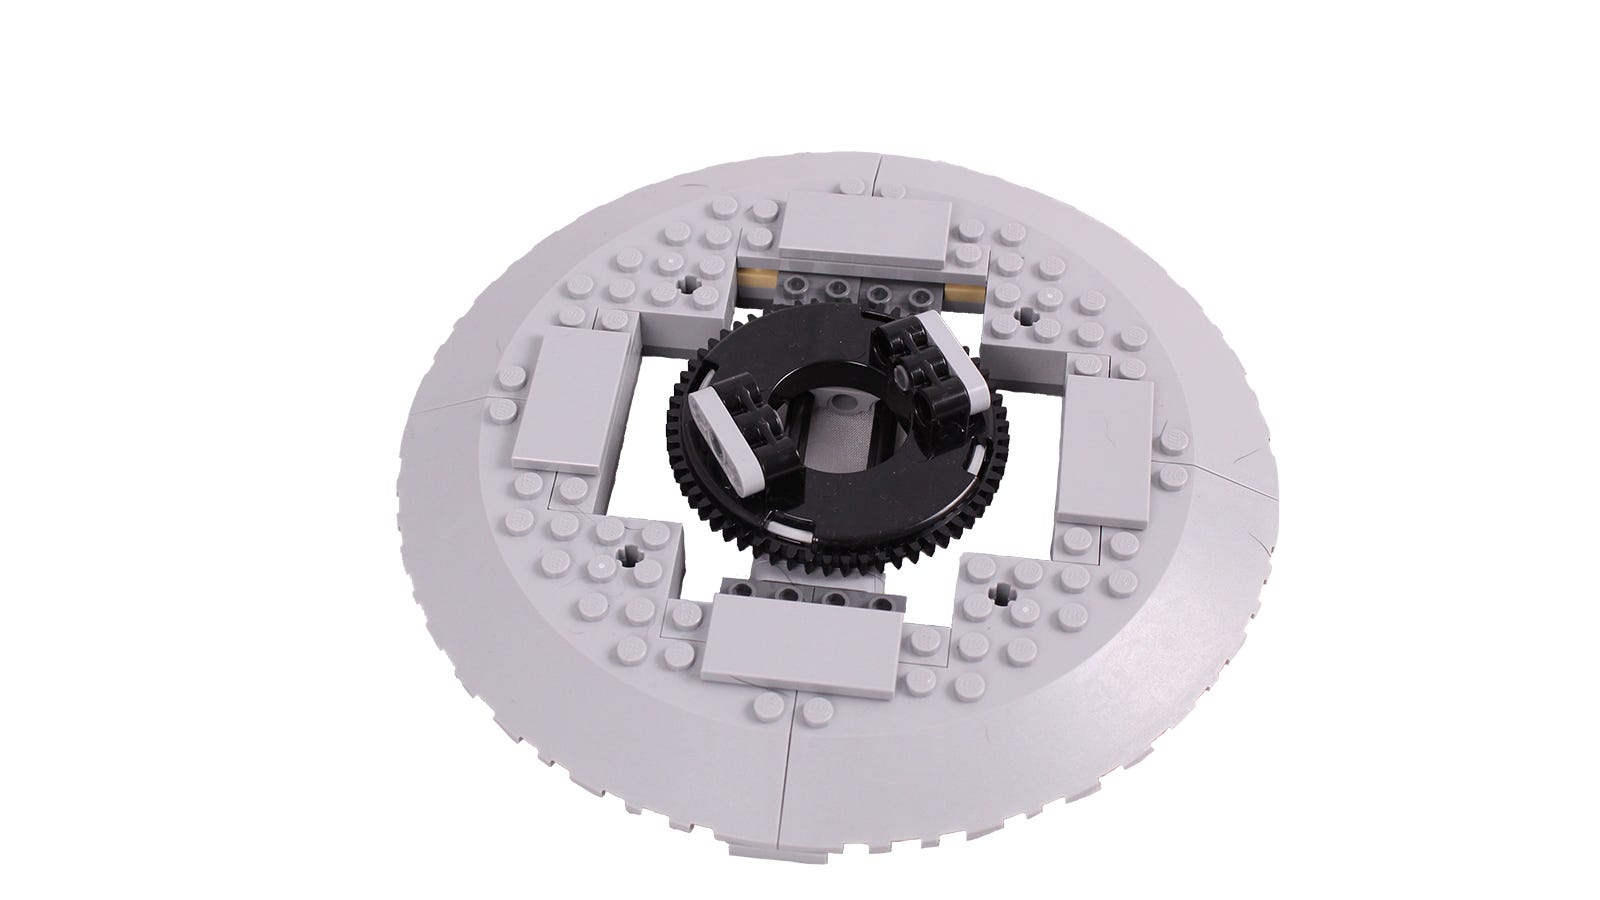 Närbild av LEGO skivspelarens mekanism.